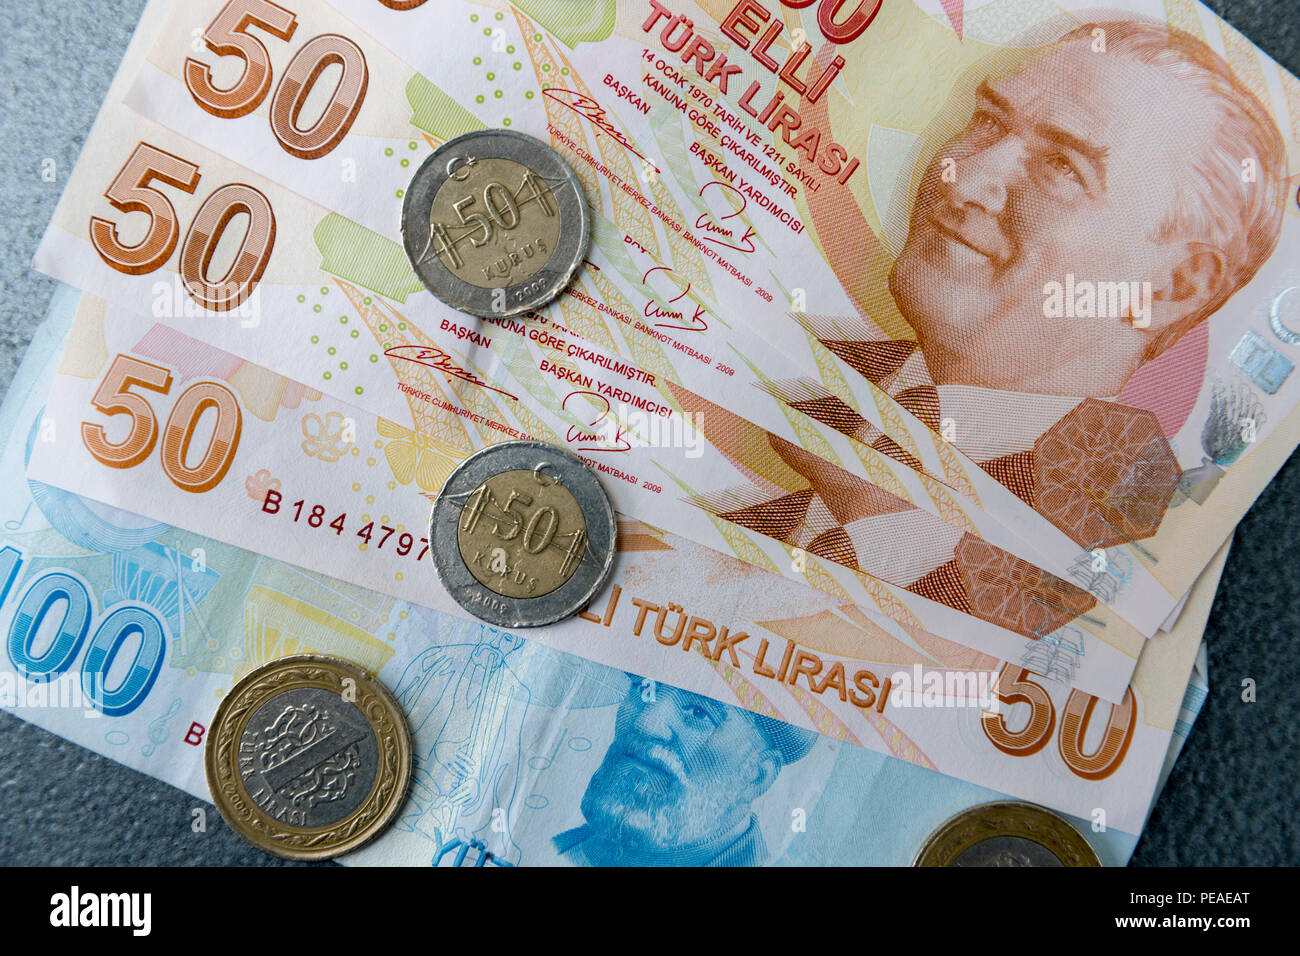 La lira turca - Turk Lirasi - moneta locale le monete e le banconote, dotato di immagine di Ataturk, nella Repubblica di Turchia Foto Stock